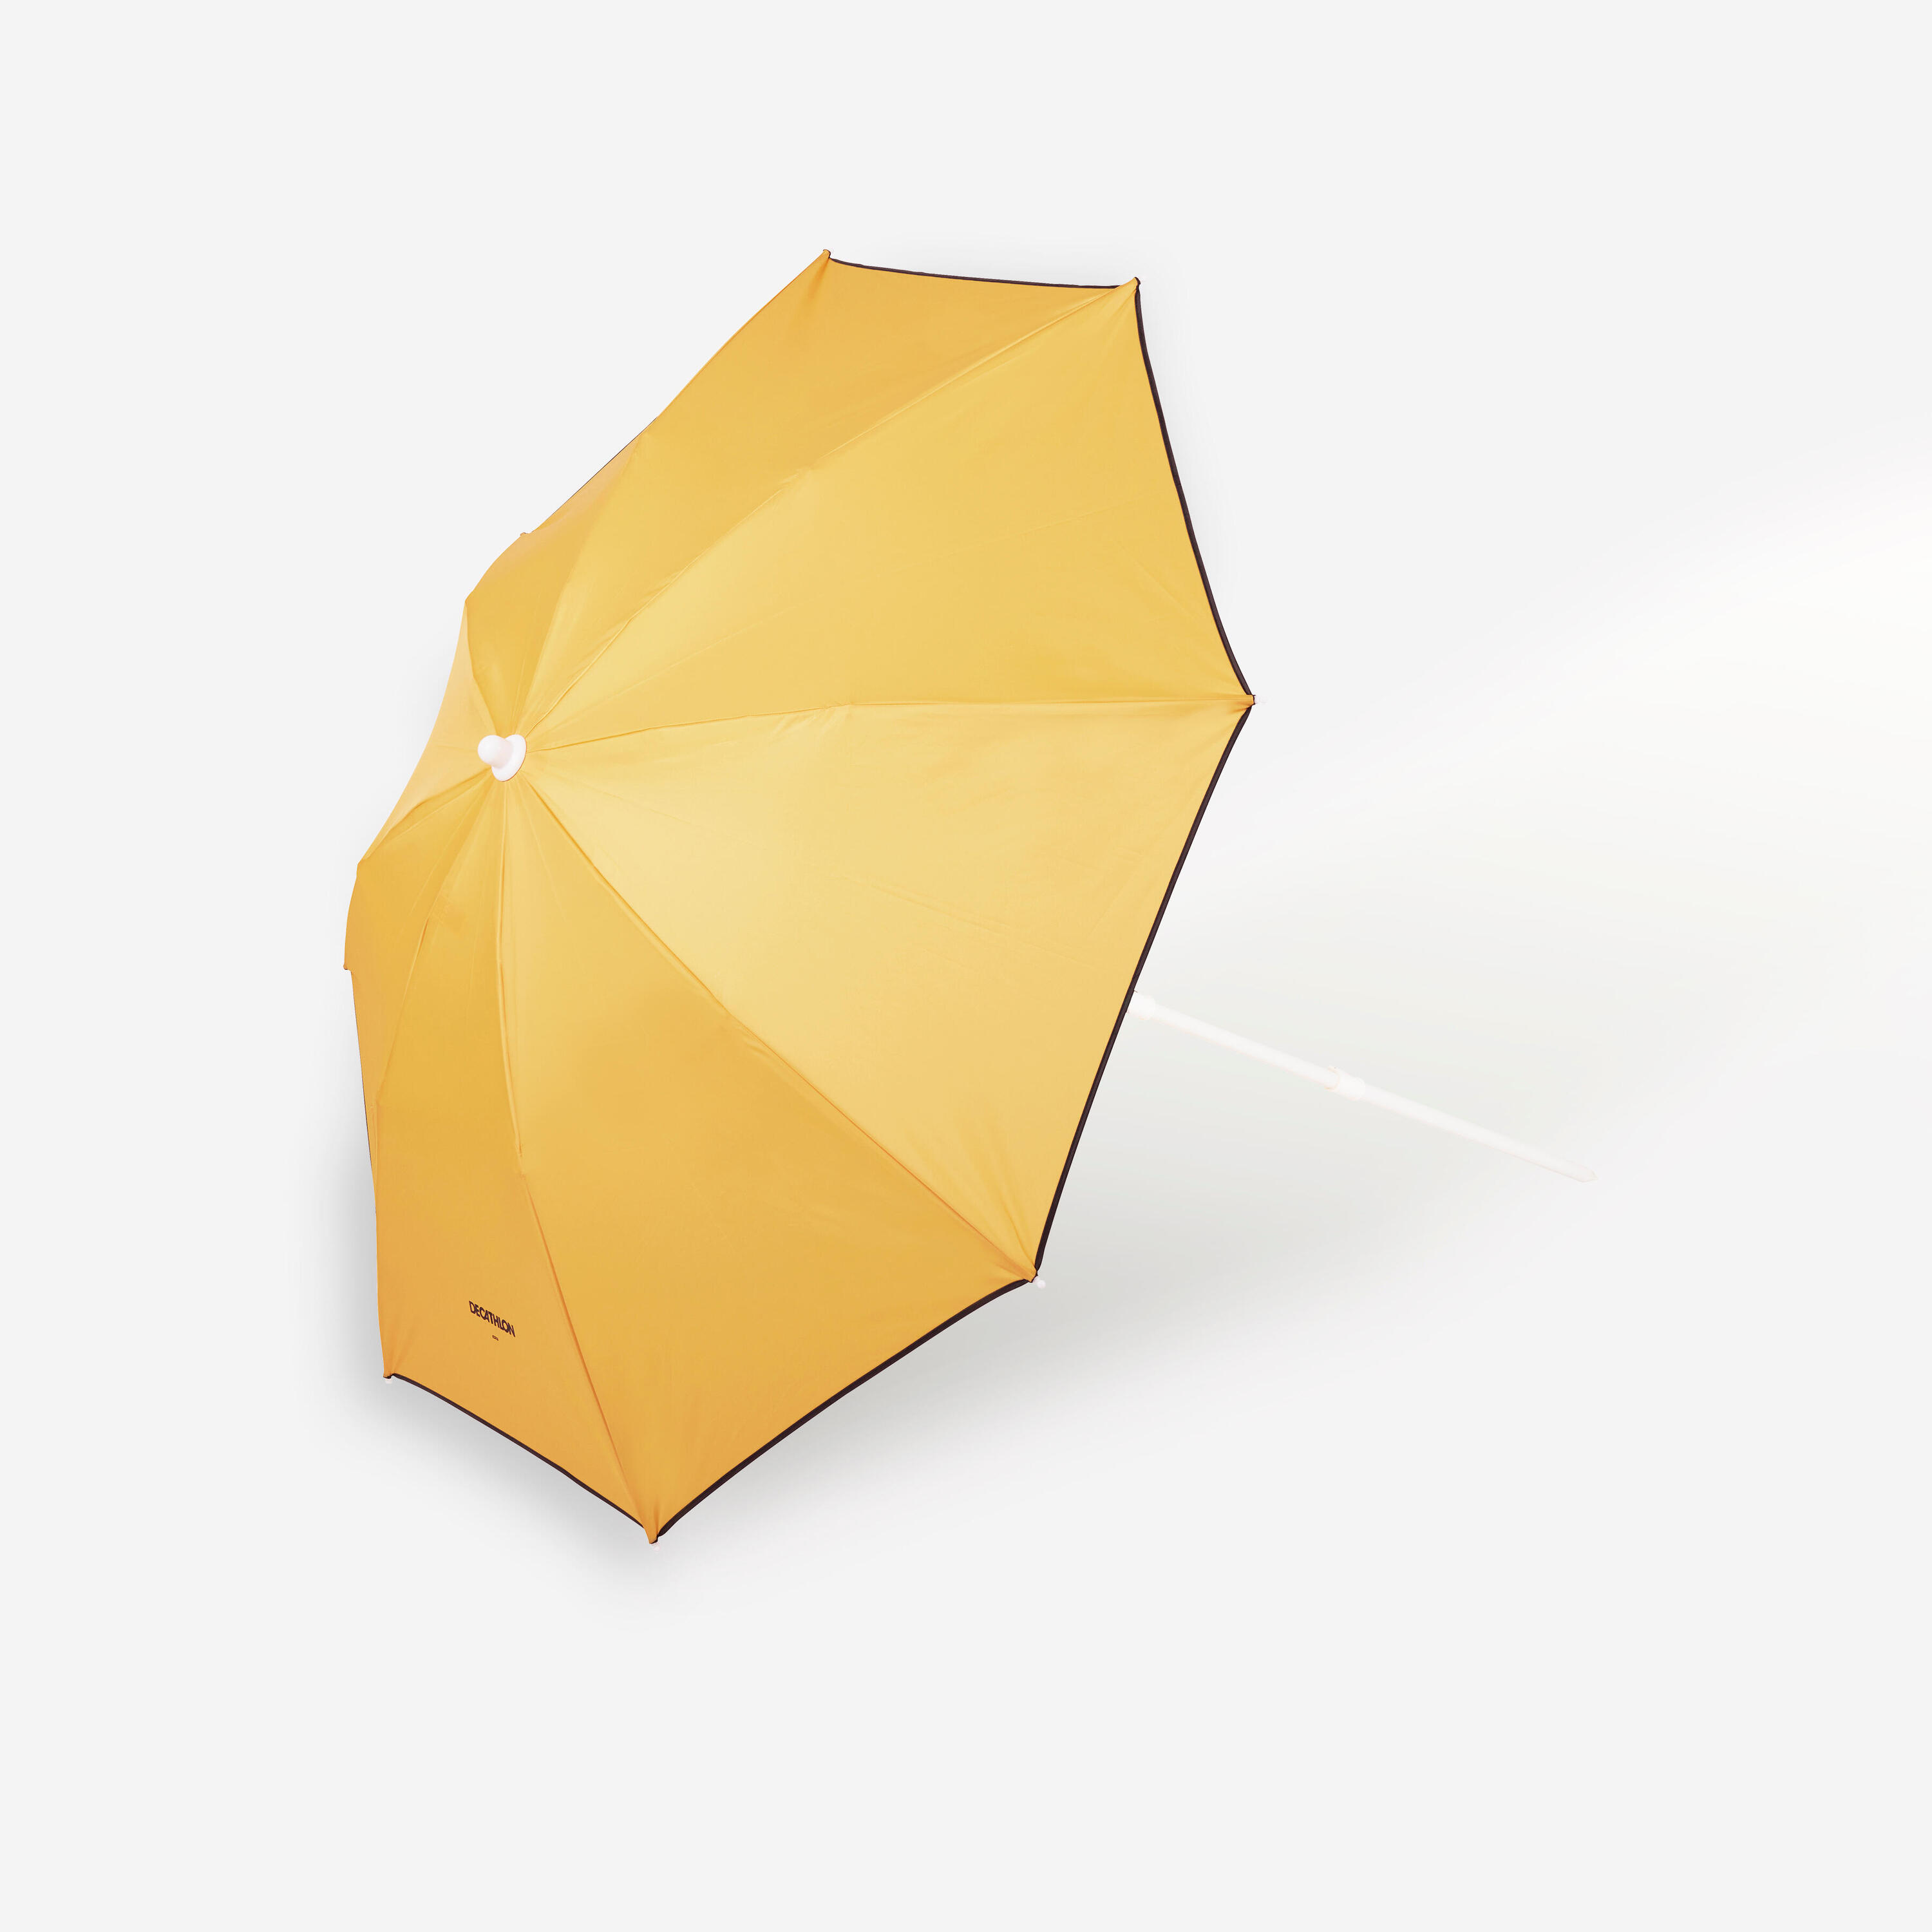 Compact beach umbrella 2 person UPF 50+ - Paruv 160 yellow ochre 6/8